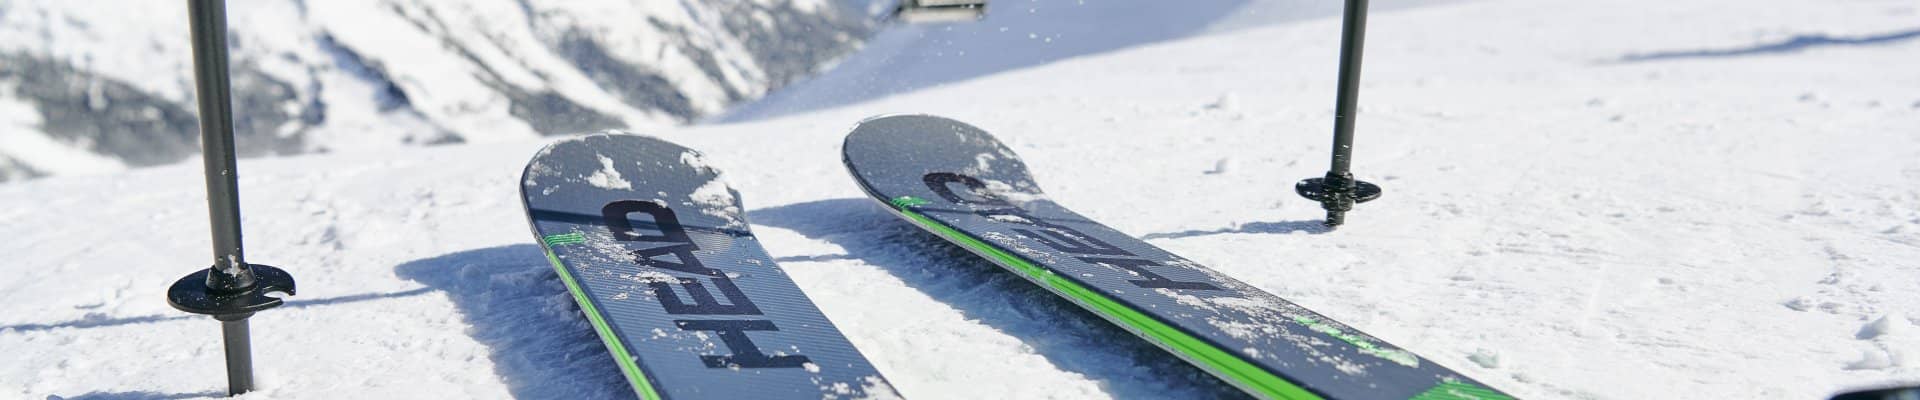 Ski- en snowboardmateriaal huren voor een groep